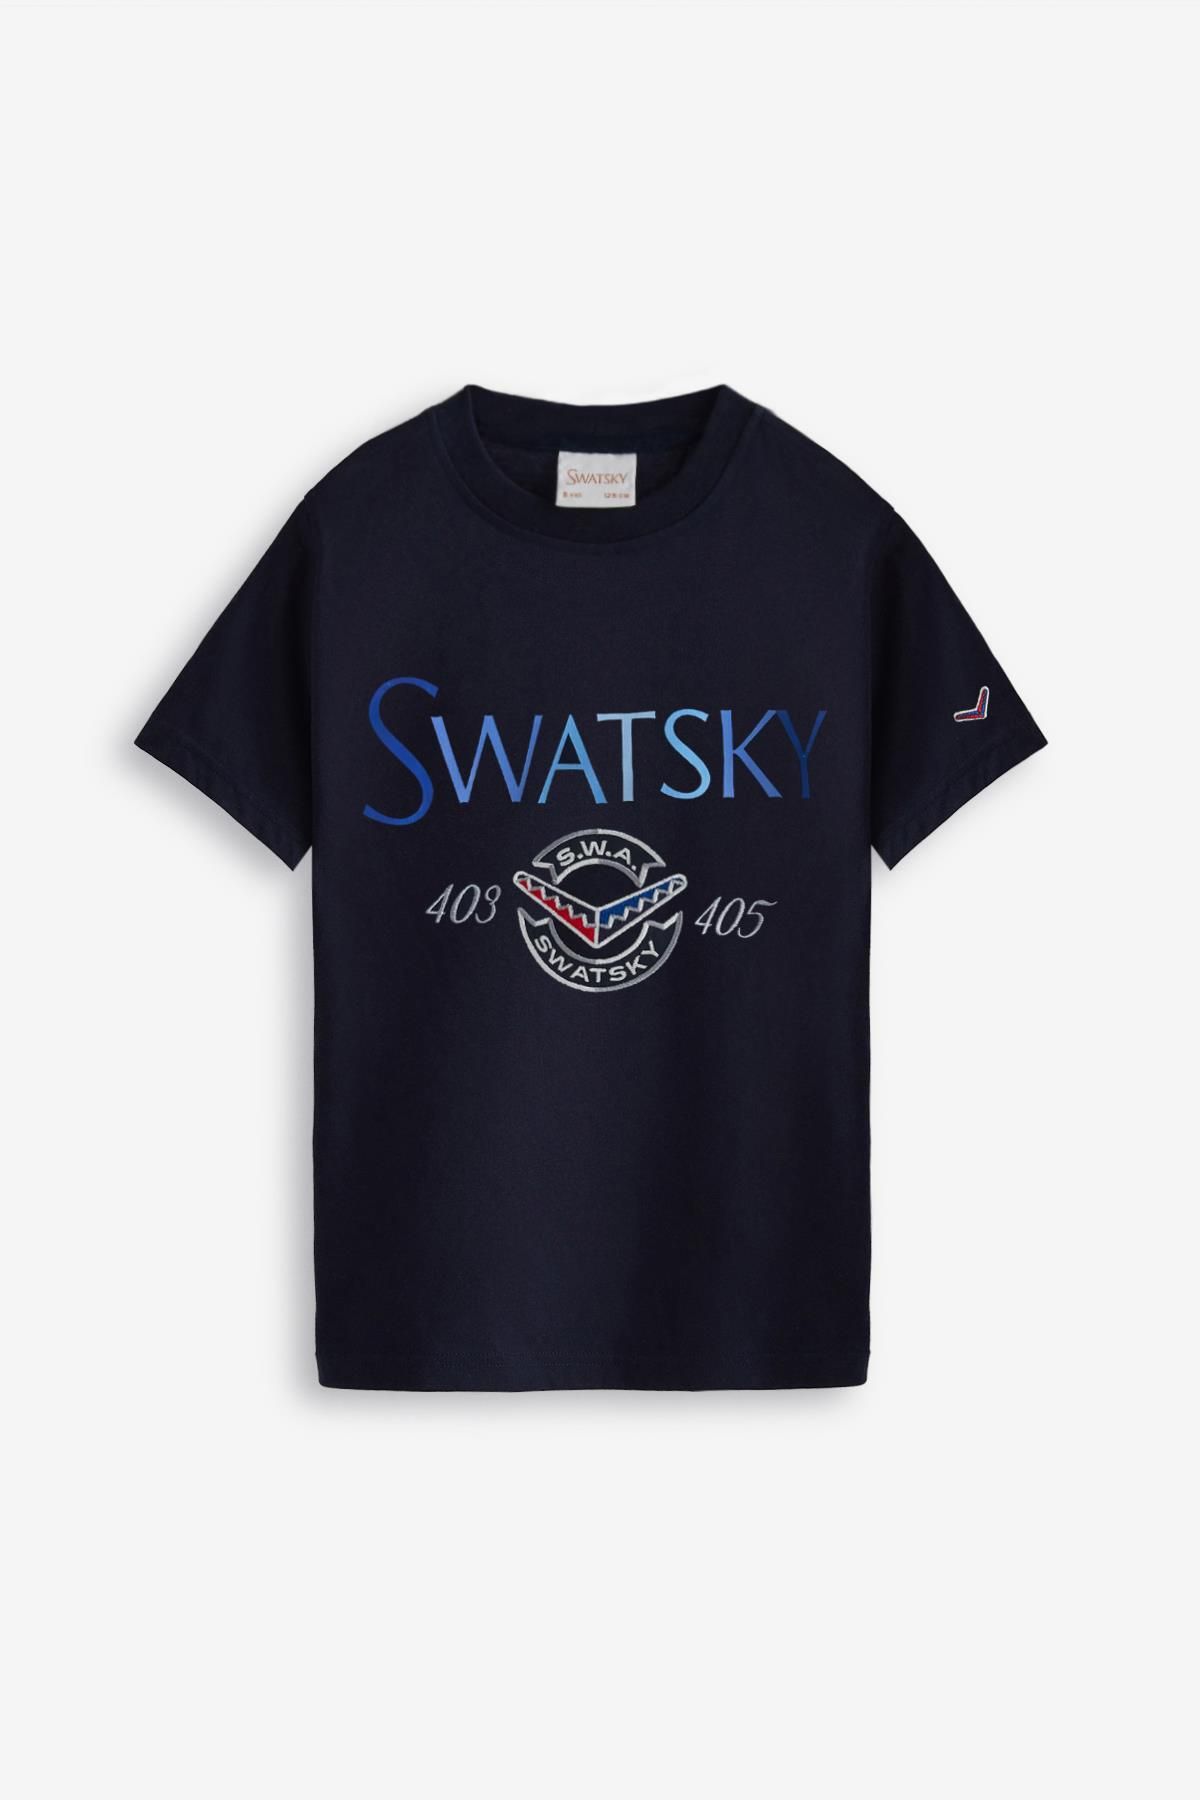 SWATSKY Boy's Navy Blue T-Shirt 23PFWSW1566